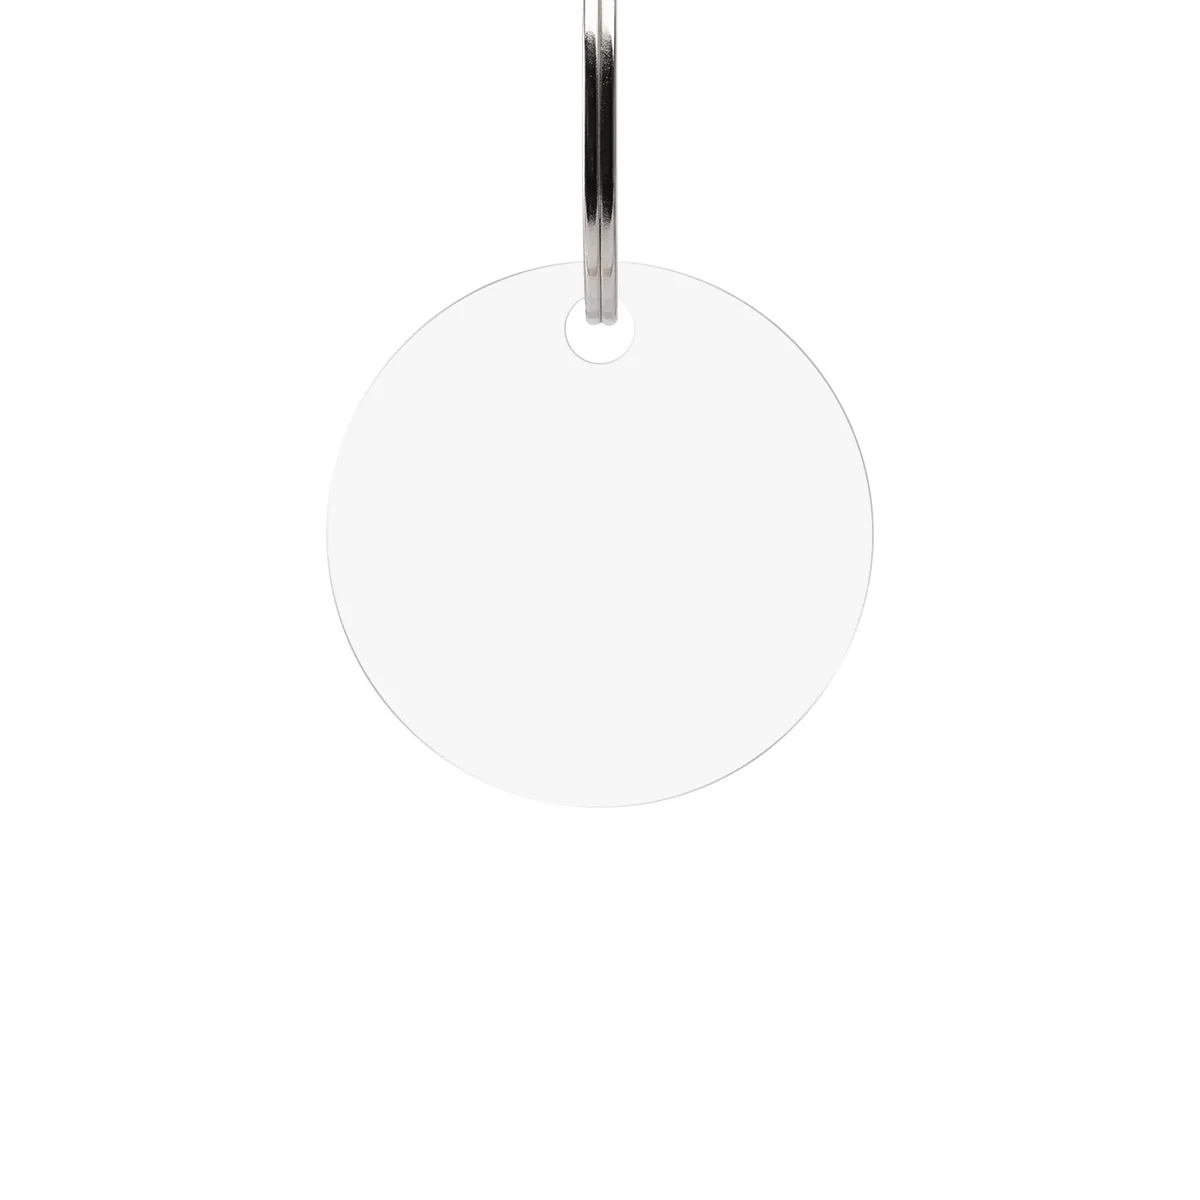 Personalisierter Acrylglas Schlüsselanhänger als Kreis - Eigene Gravurdatei hochladen